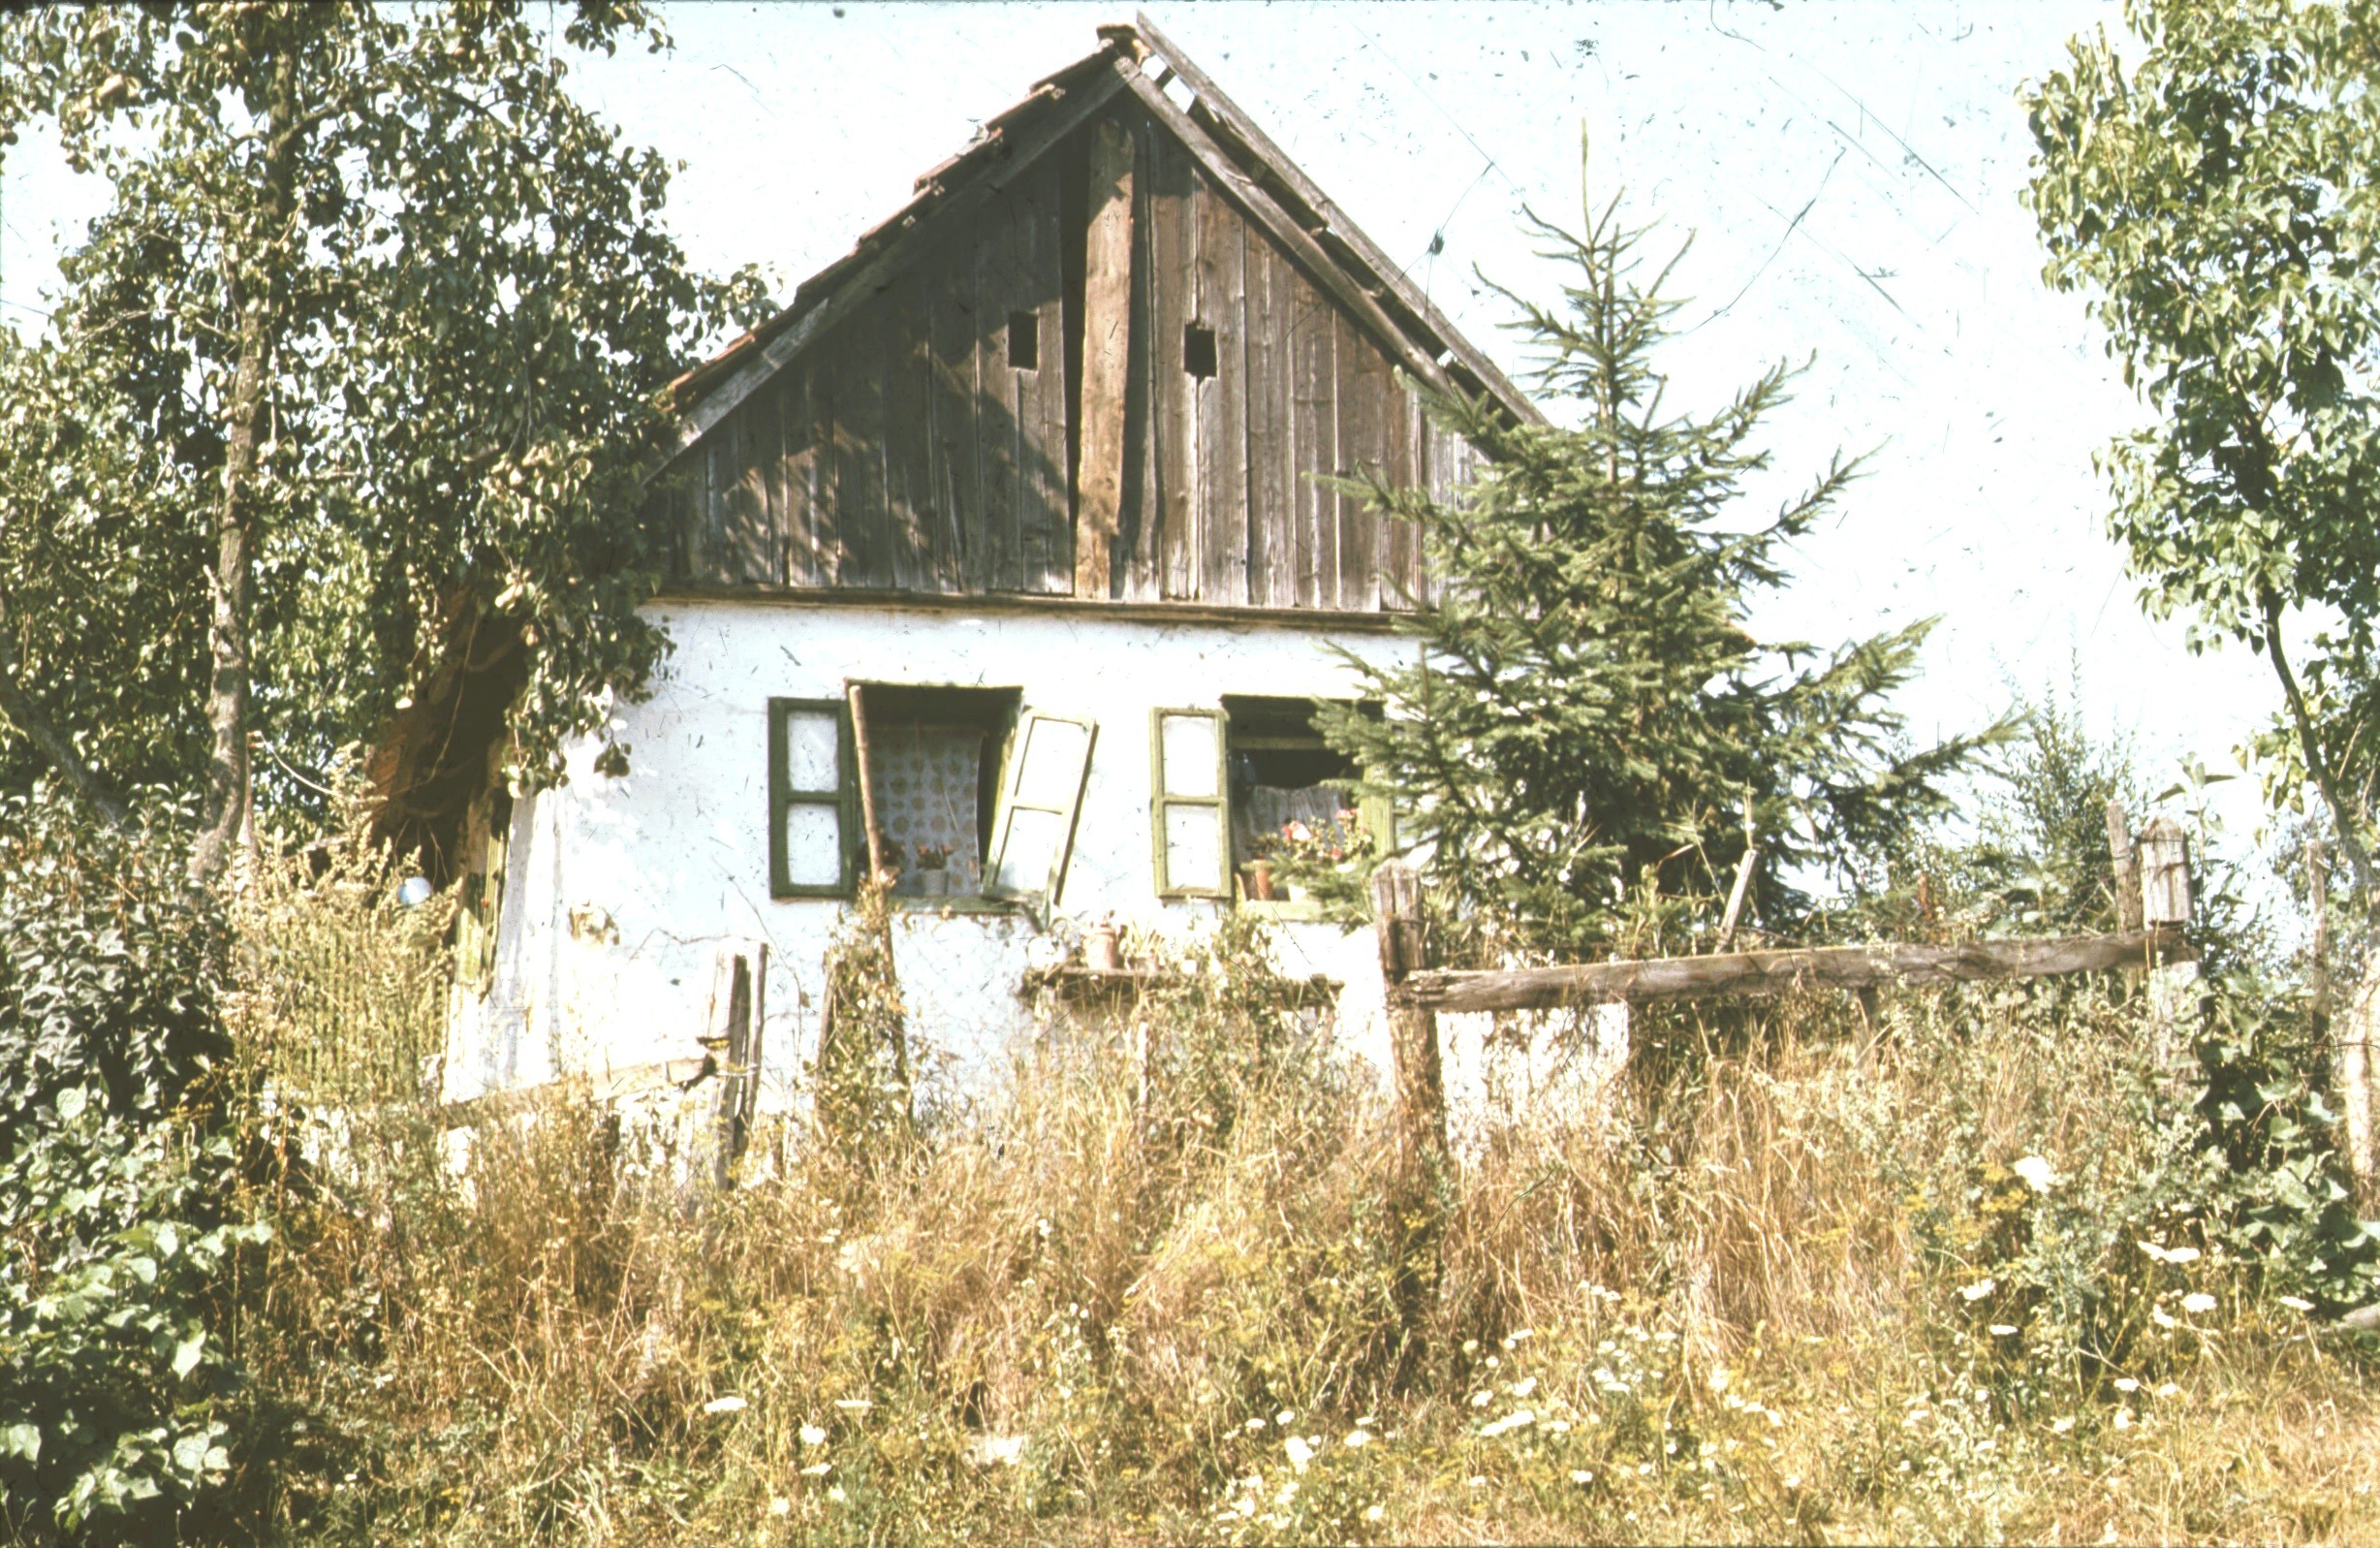 Lakóház (deszka homlokzatú) (Rippl-Rónai Múzeum CC BY-NC-ND)